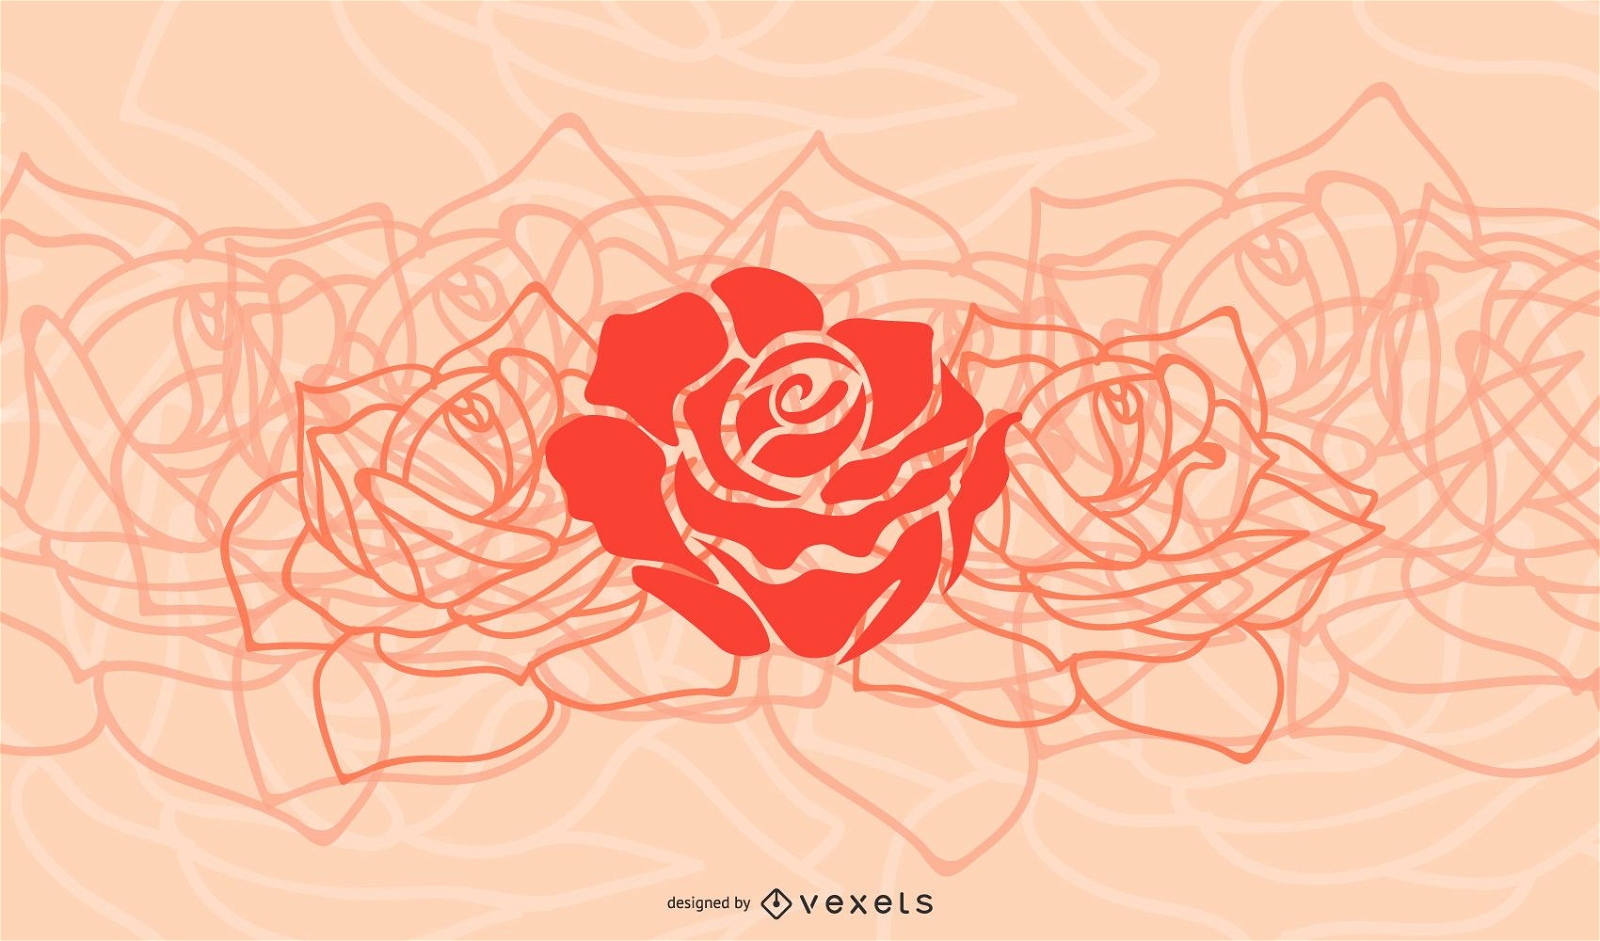 Vereinfachter Blumenhintergrund mit roten Rosen